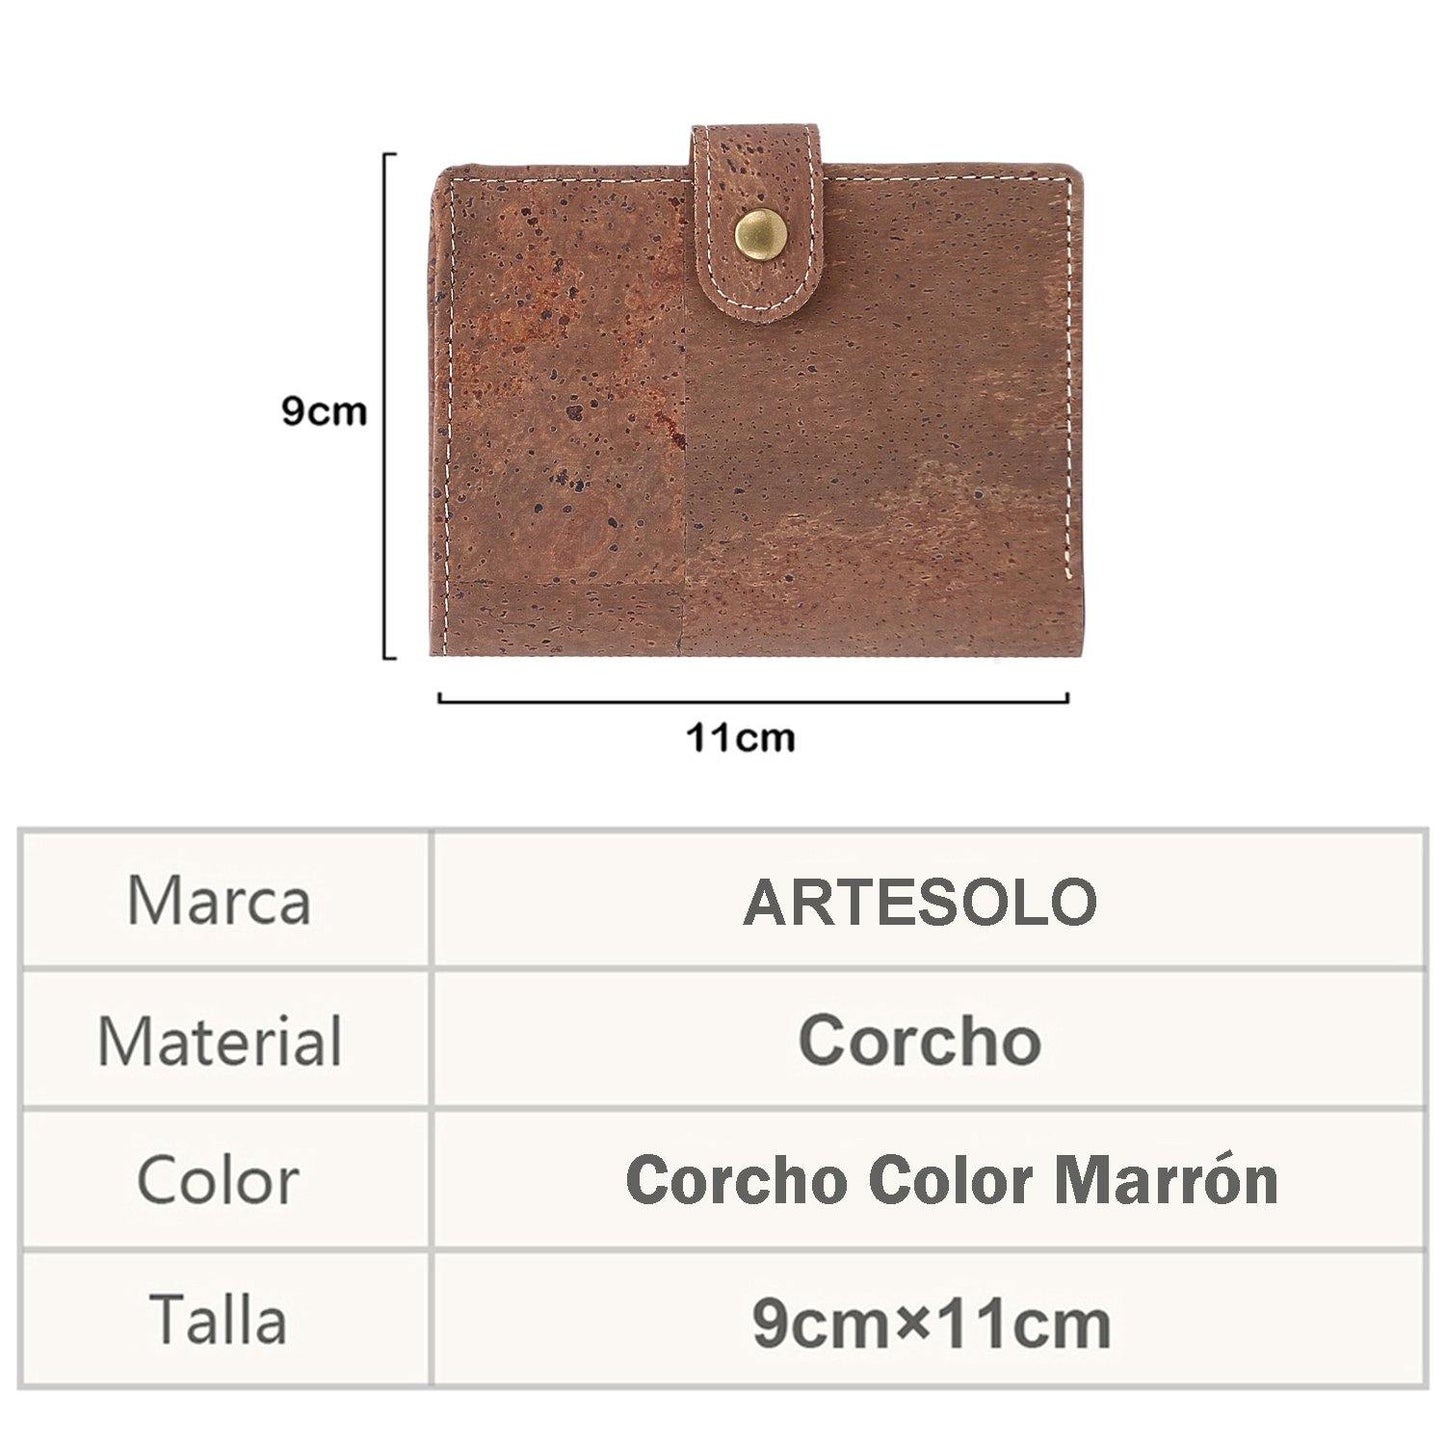 Billetera de Corcho Color Marrón - ARTE